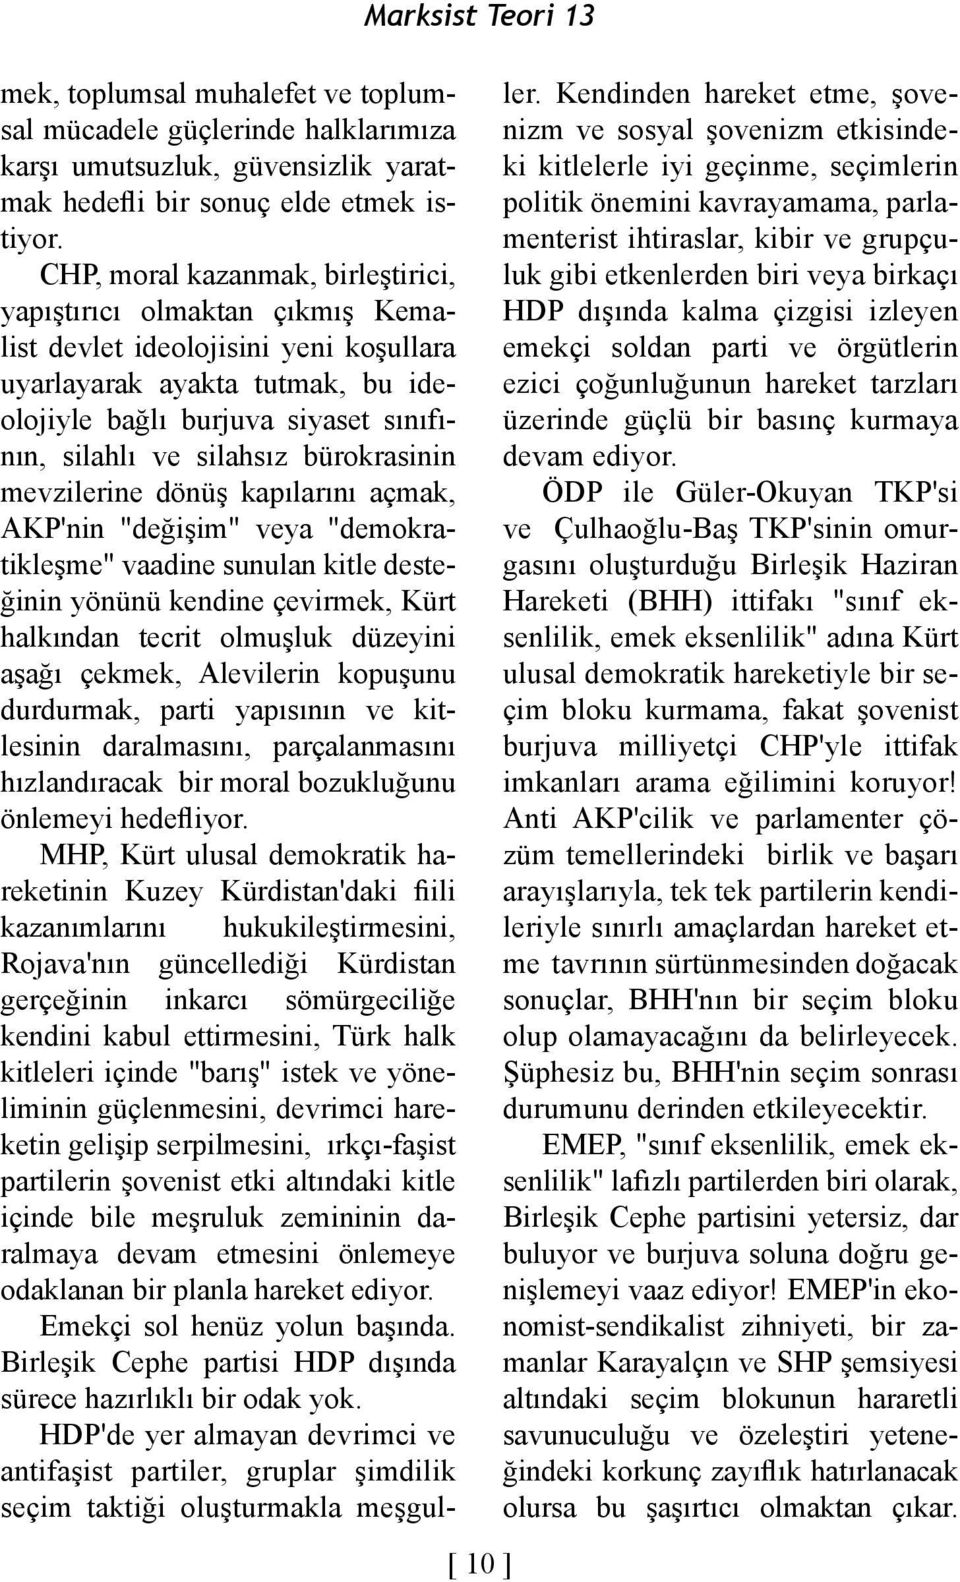 silahsız bürokrasinin mevzilerine dönüş kapılarını açmak, AKP'nin "değişim" veya "demokratikleşme" vaadine sunulan kitle desteğinin yönünü kendine çevirmek, Kürt halkından tecrit olmuşluk düzeyini